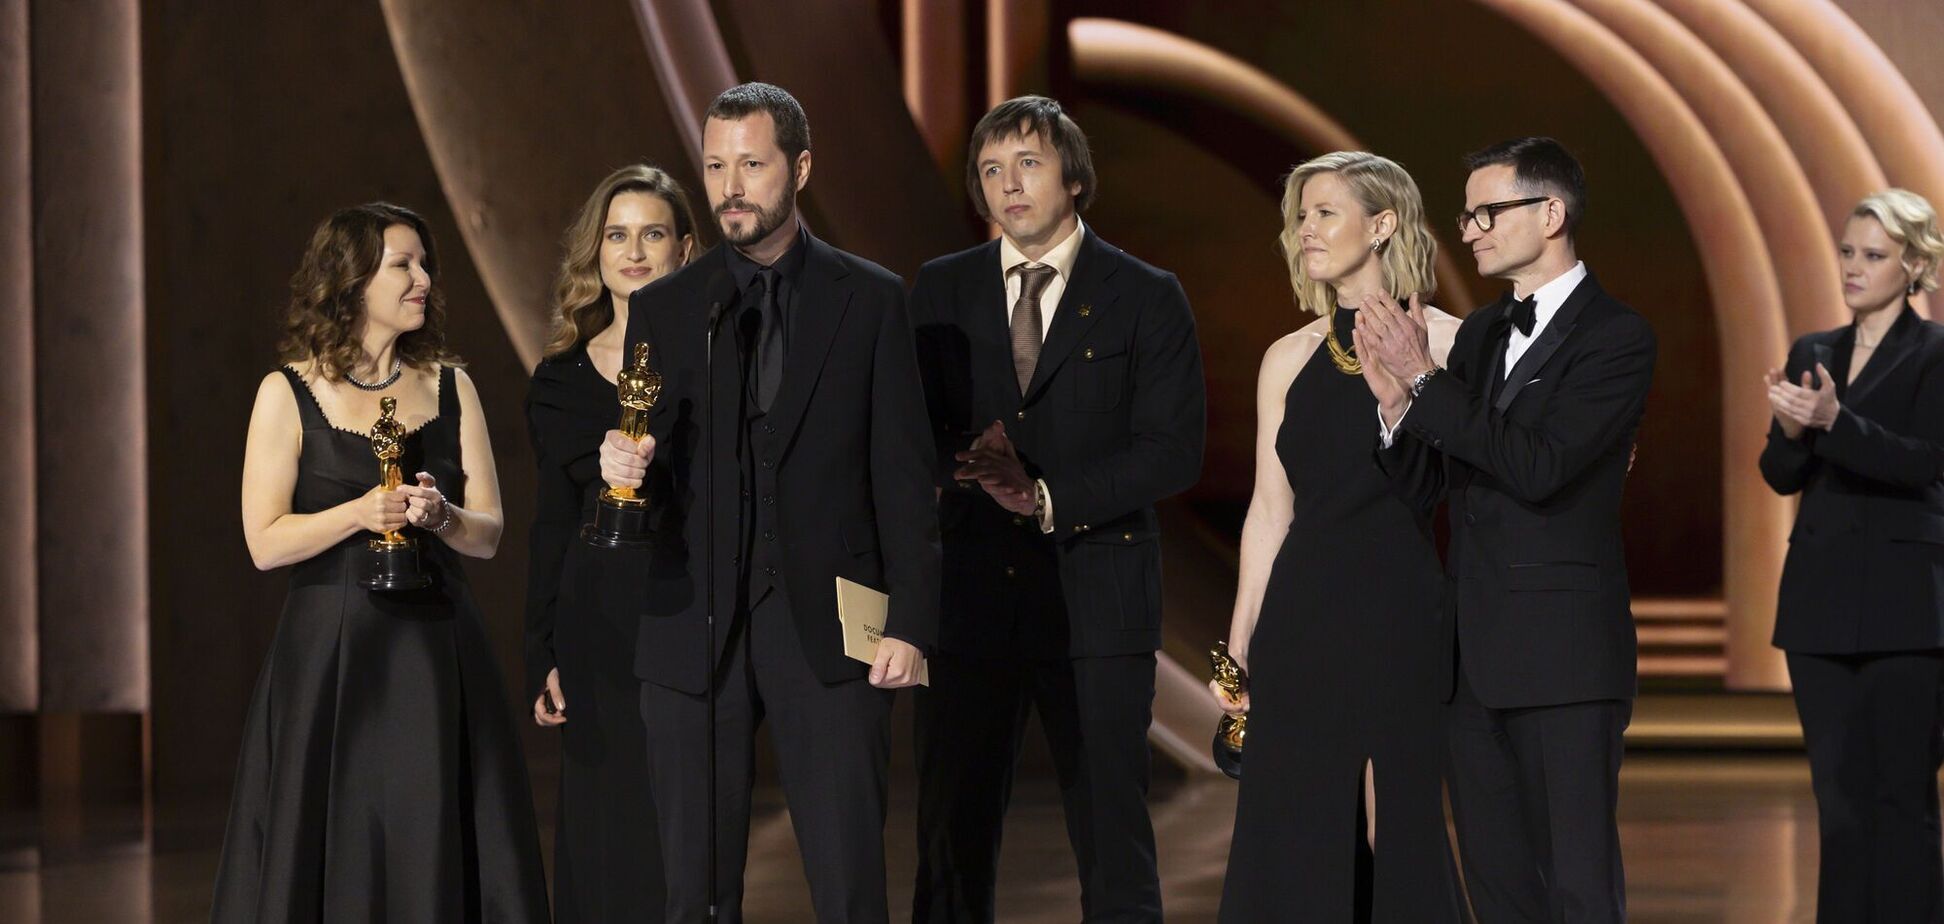 Українці, які здобули Оскар за всю 96-річну історію премії